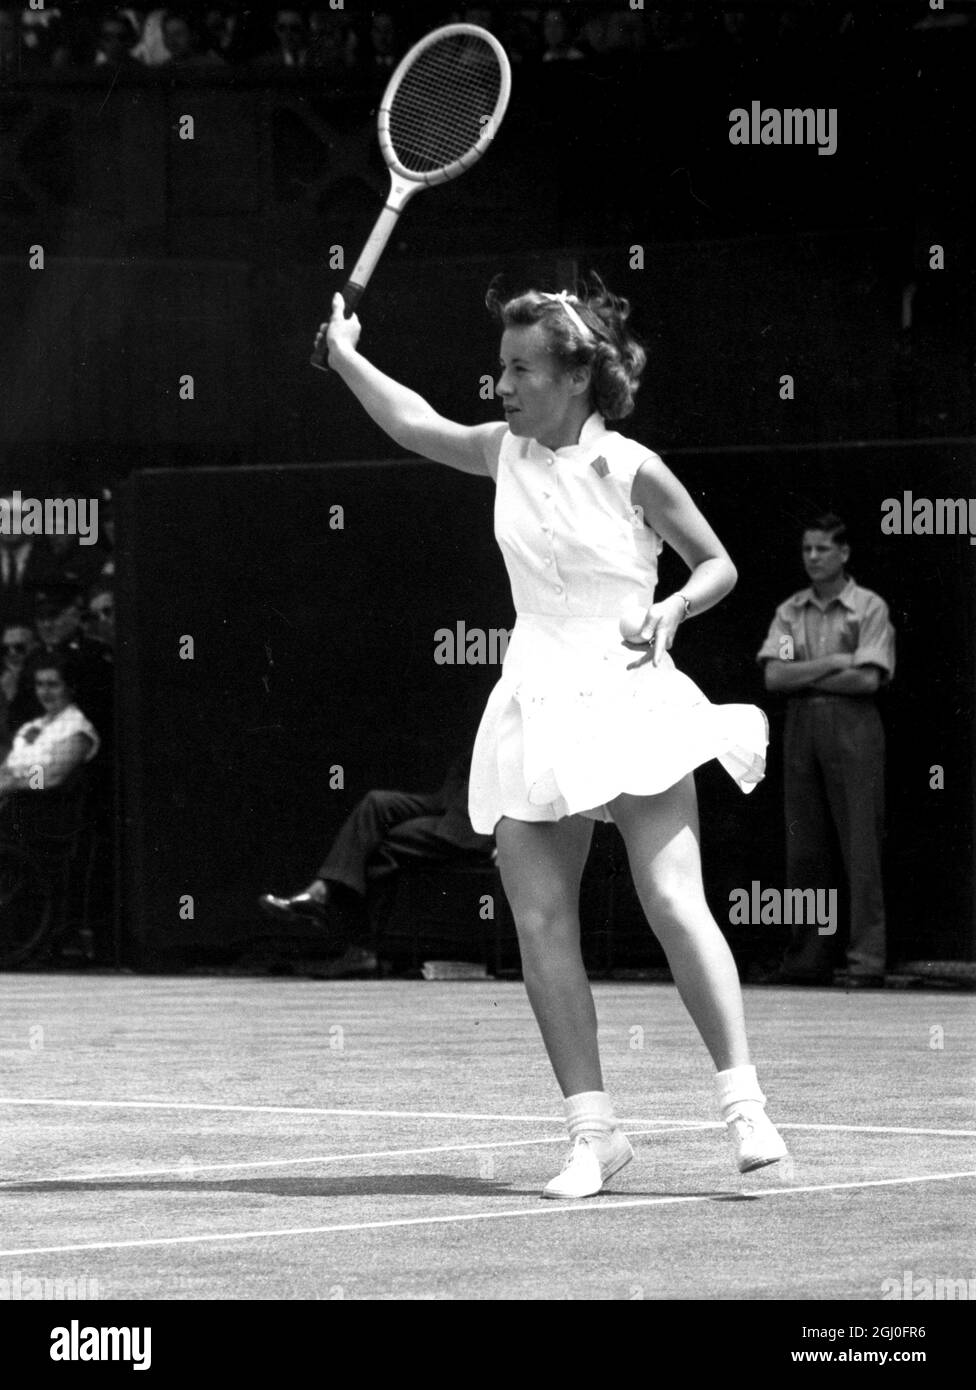 Little Mo, Miss Maureen Connolly, 17-jährige amerikanische Meisterin, spielt während ihres Einzelspiels der Wimbledon Lawn Tennis Championships auf dem Mittelfeld gegen die britische Miss Angela Mortimer. Juni 1952 Stockfoto